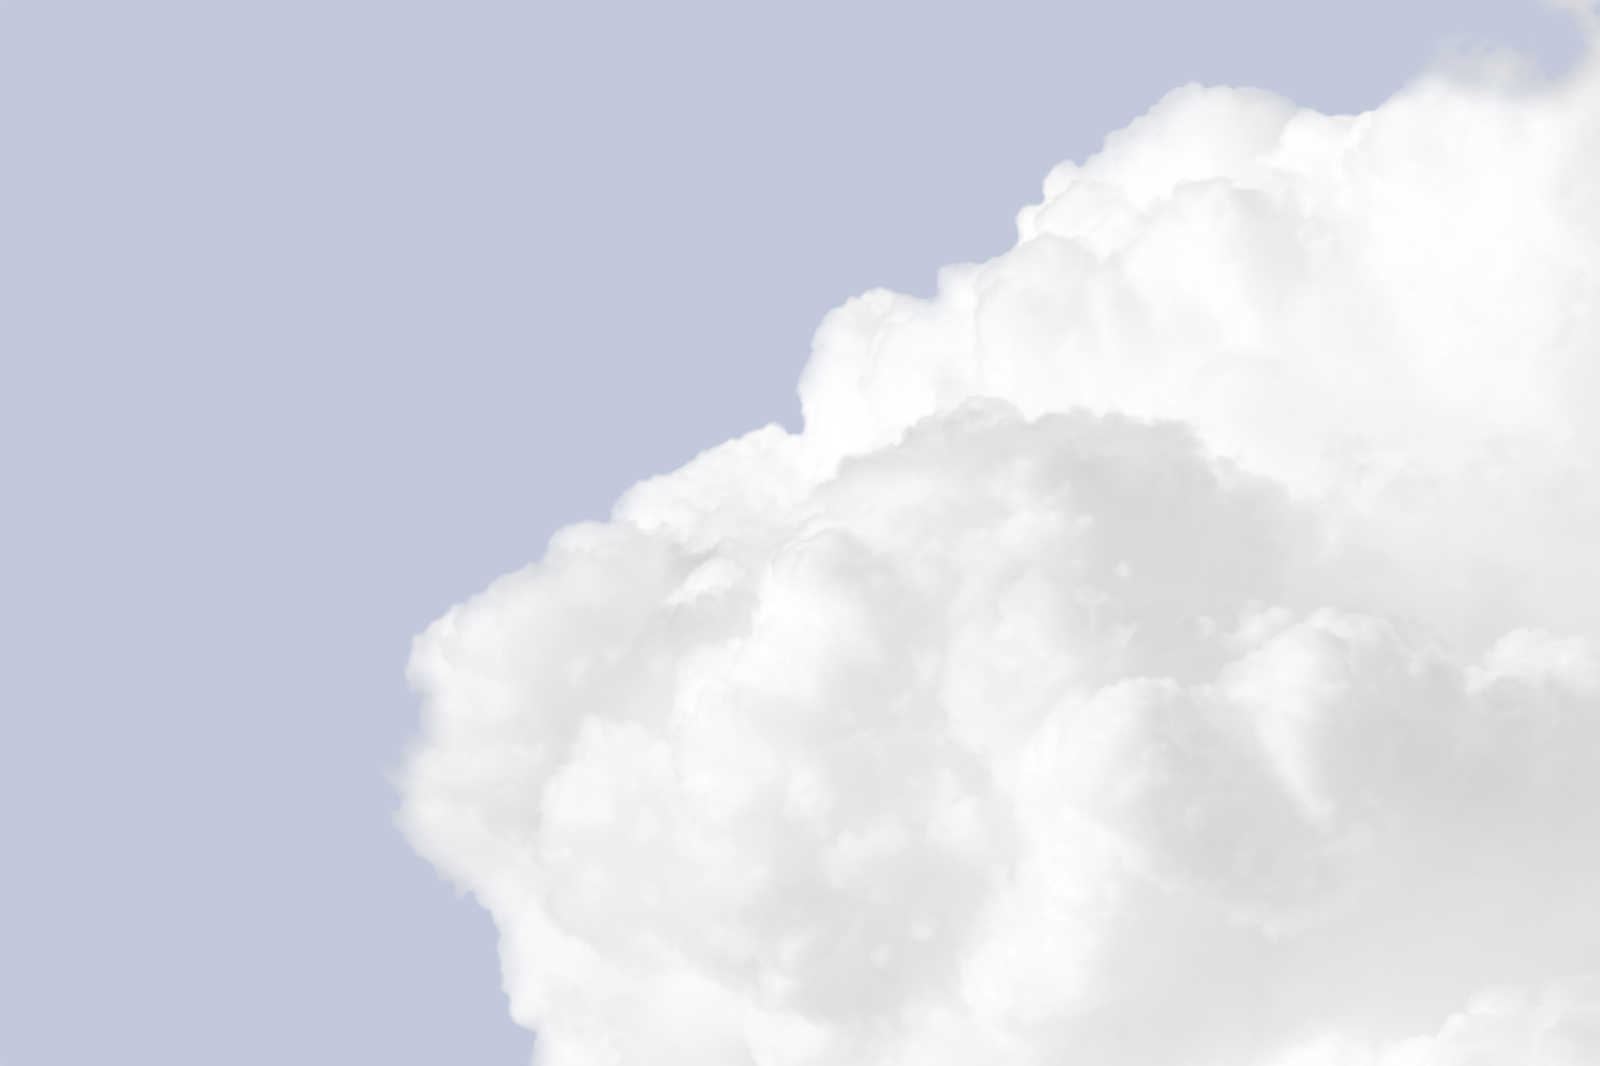             Quadro su tela con nuvole bianche in un cielo blu brillante - 0,90 m x 0,60 m
        